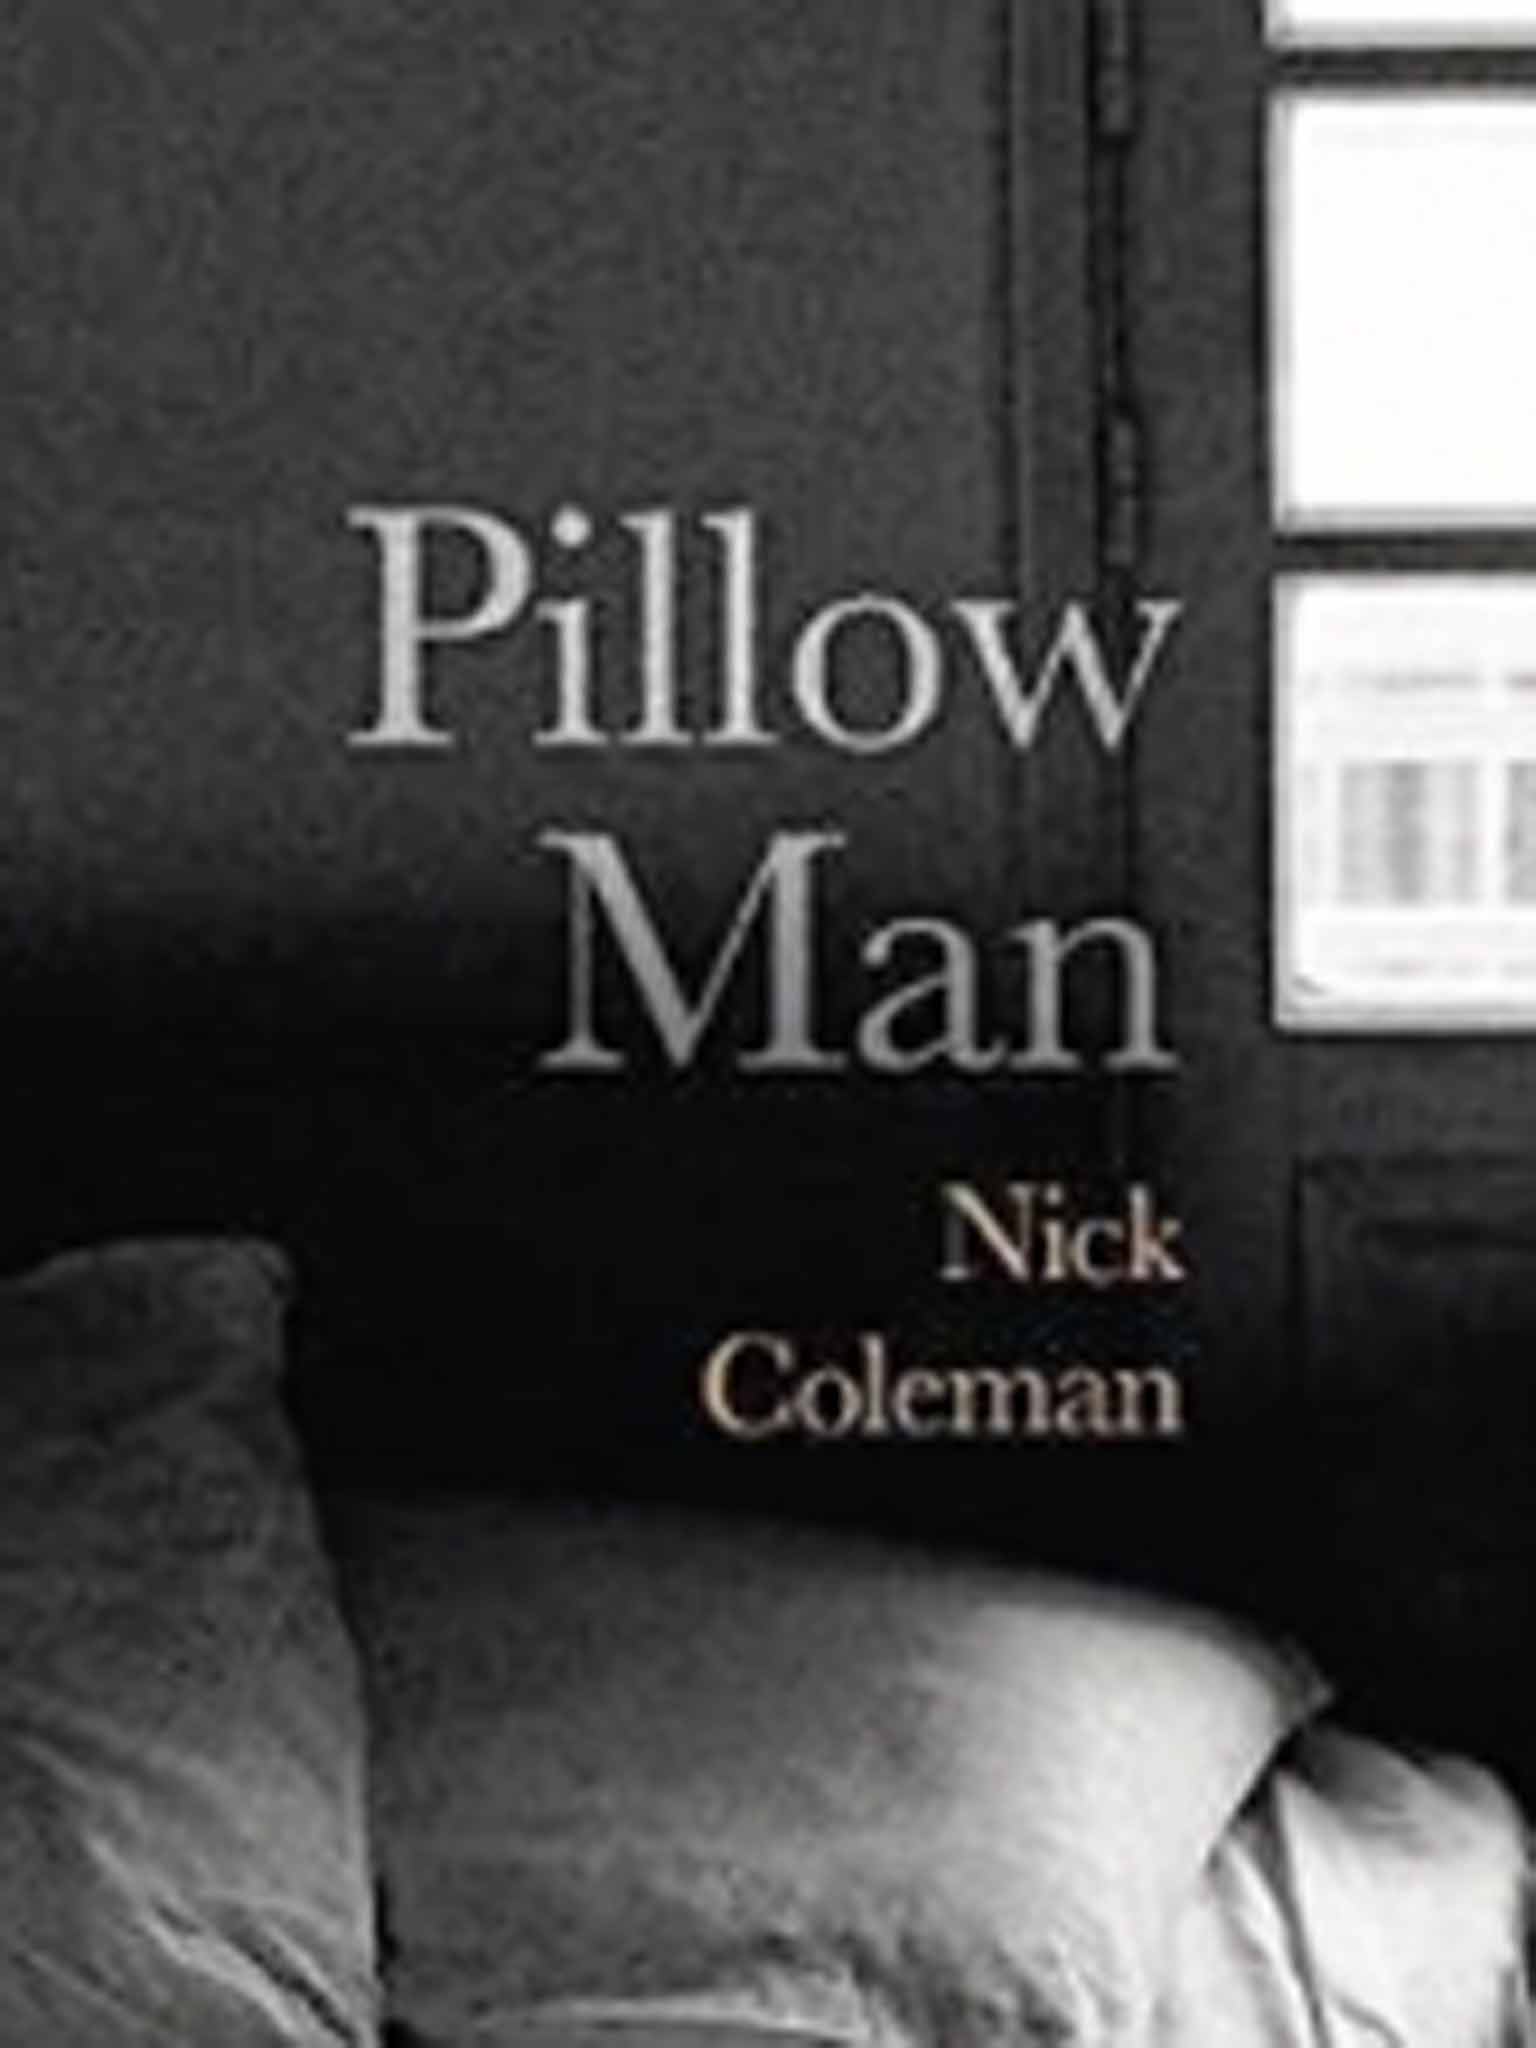 Pillow Man